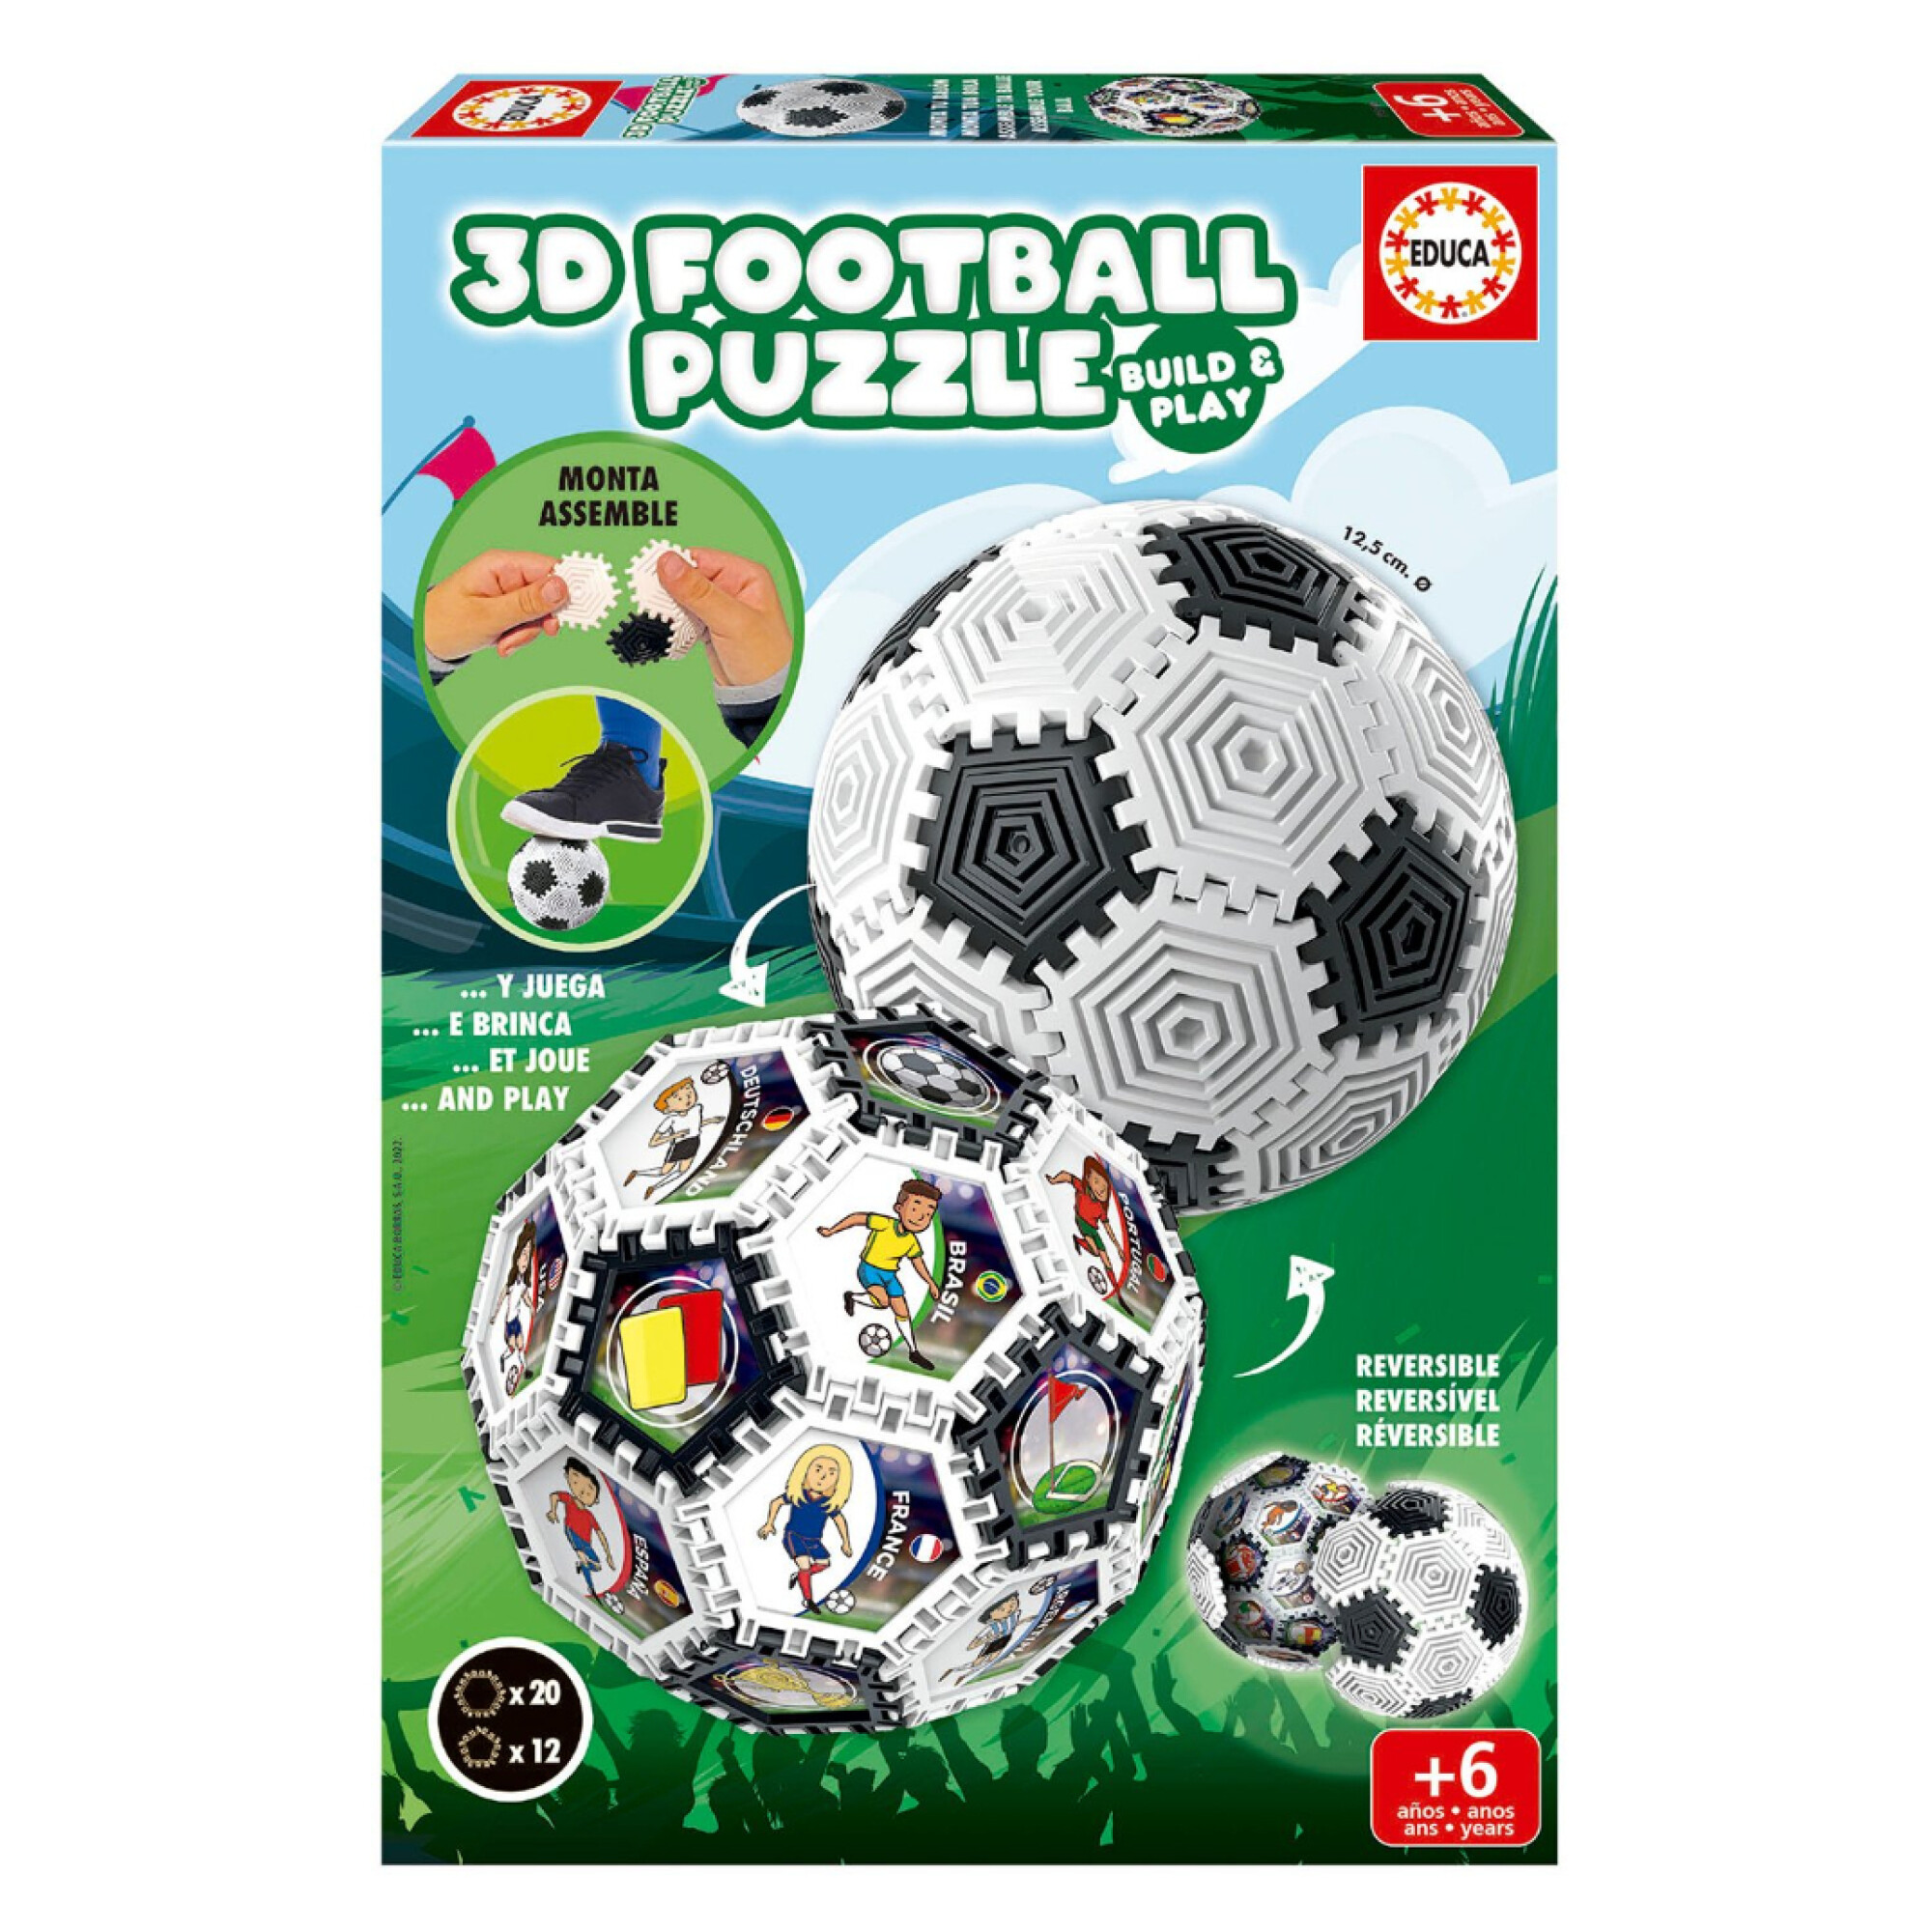 Puzzle deportes futbol - Tienda Multididacticos